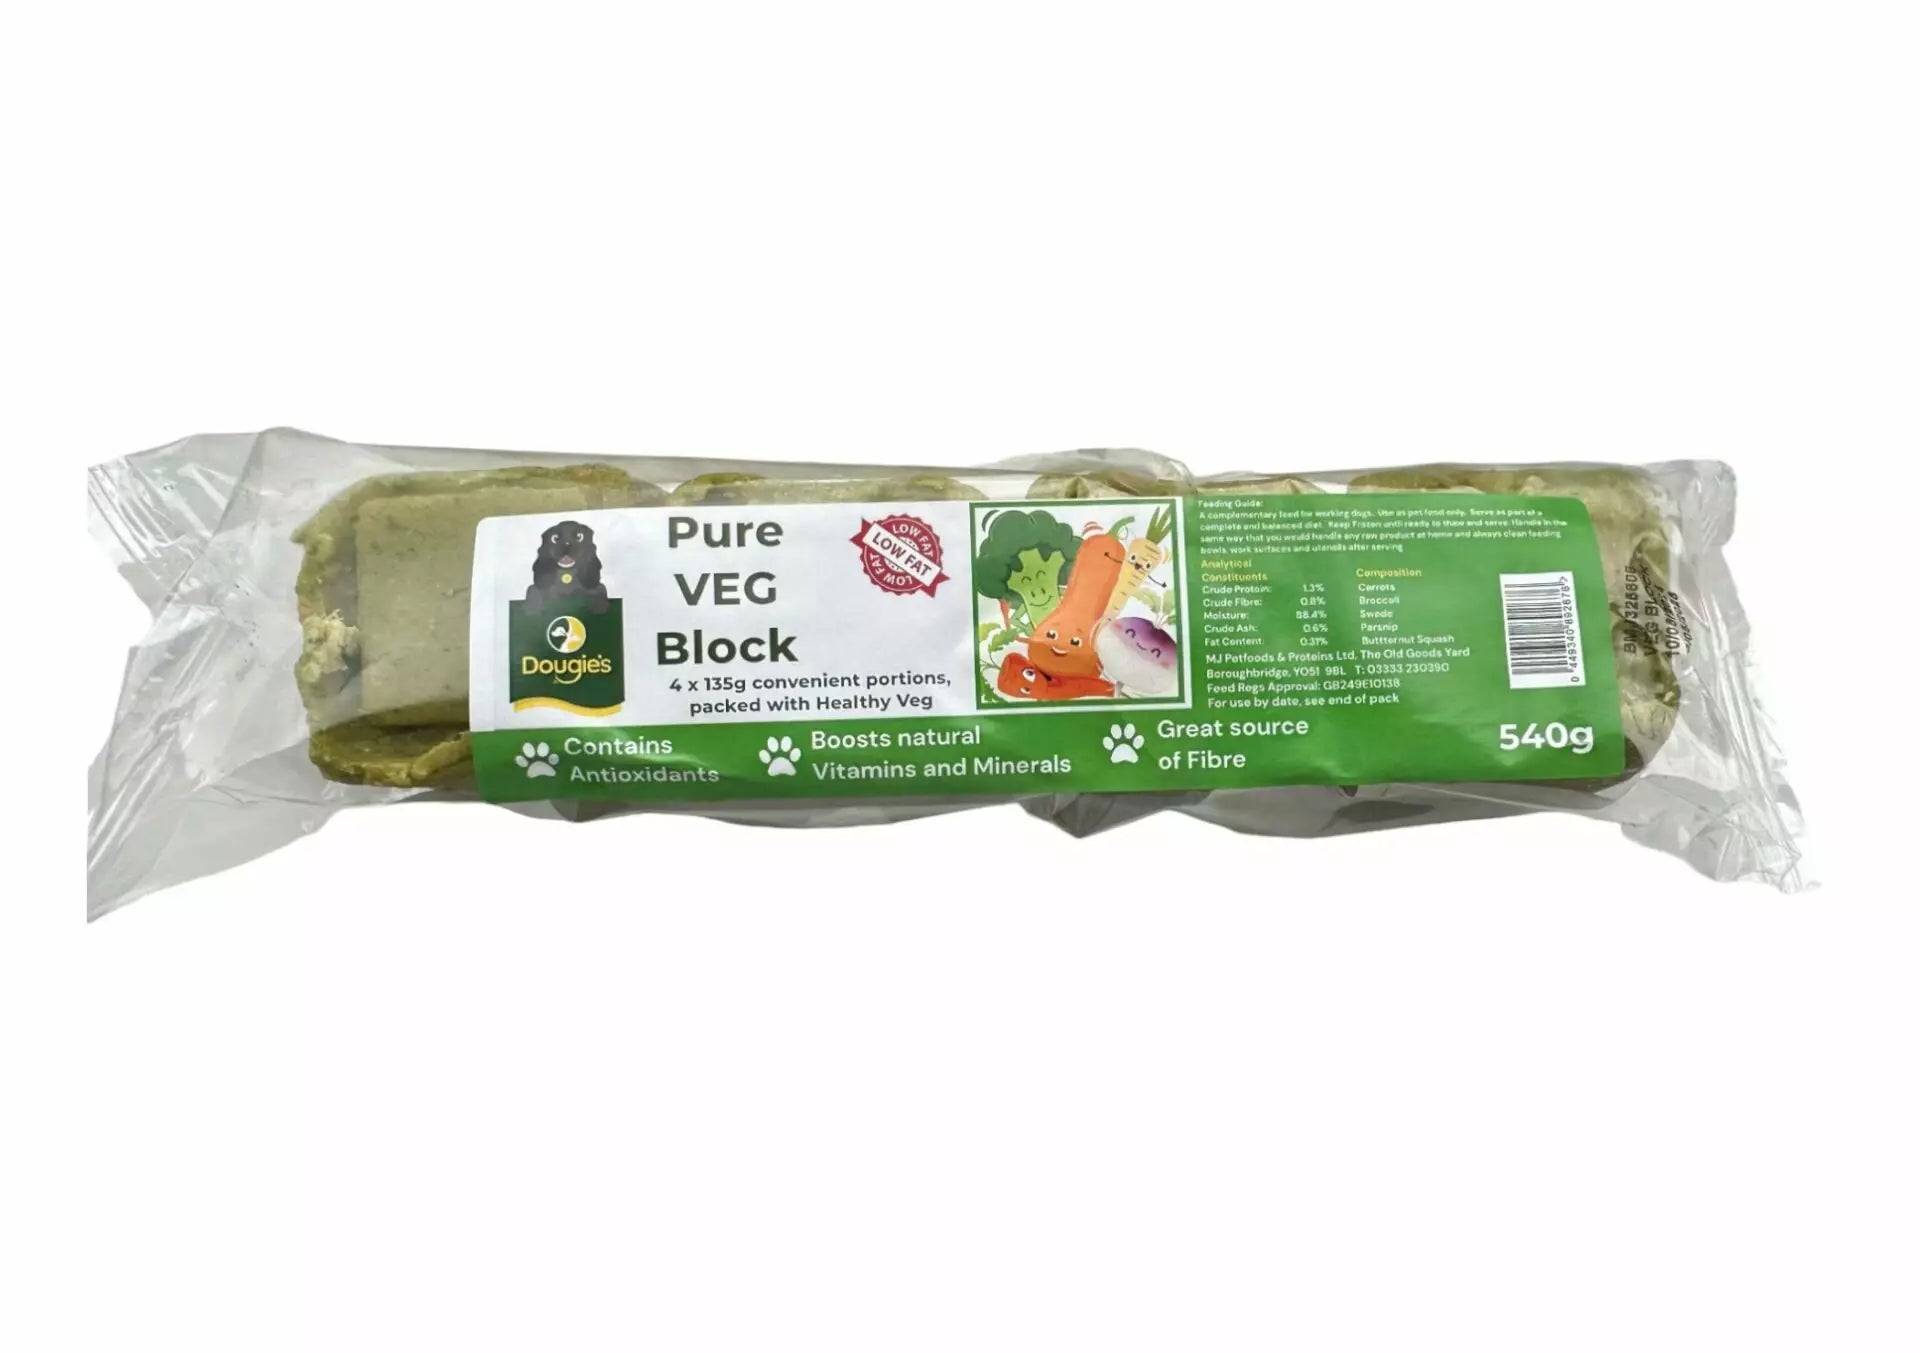 Dougie's Pure Veg Block 540g